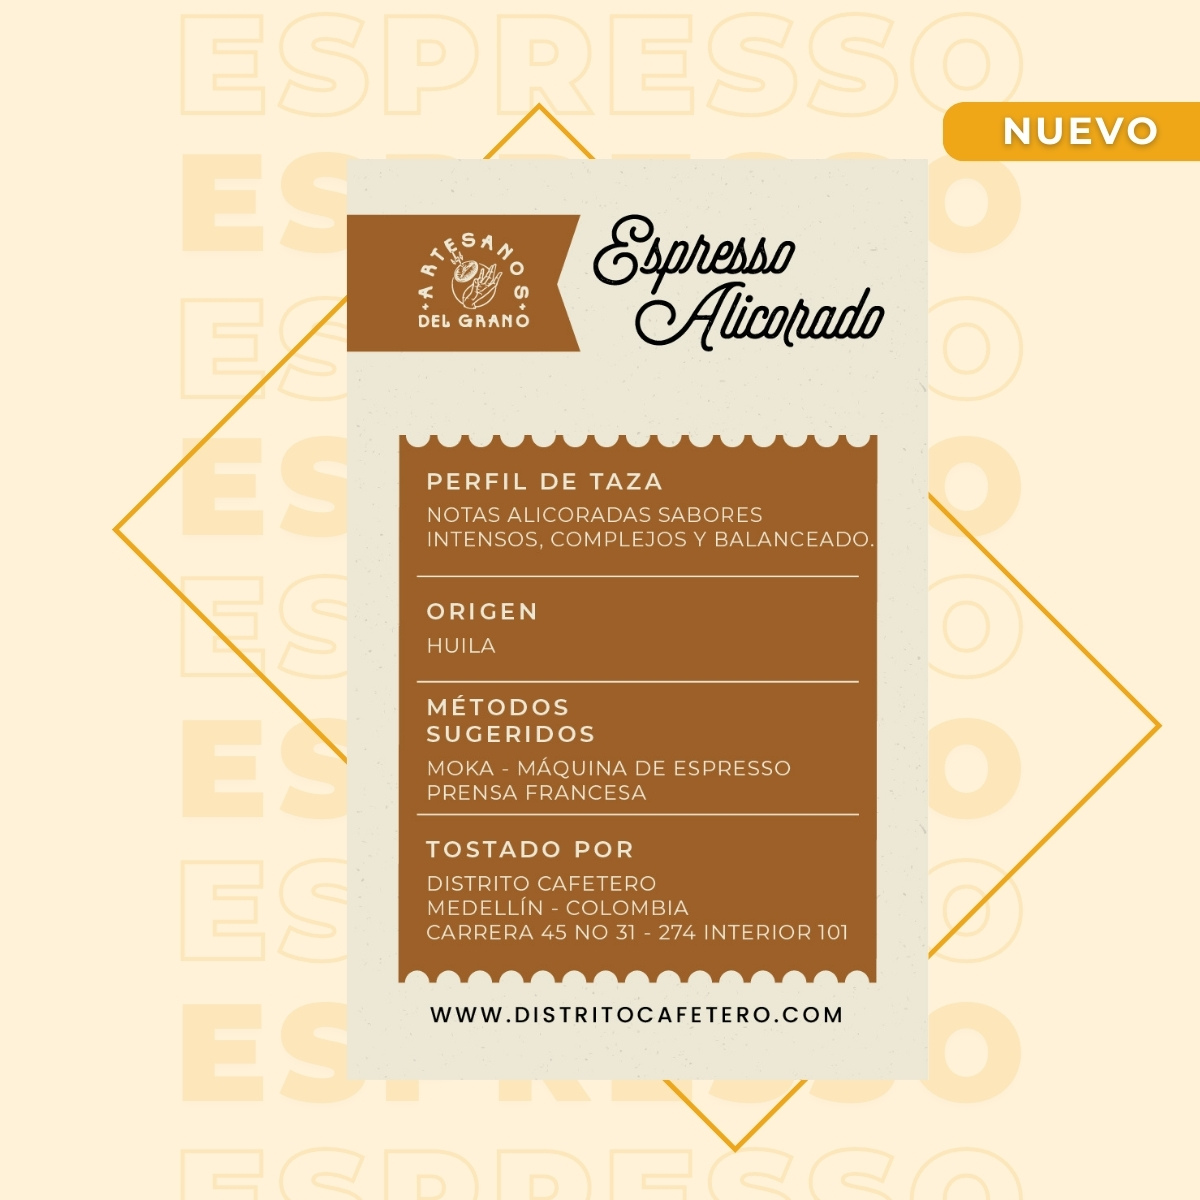 ESPRESSO ALICORADO REVERSO - Café Especial - Espresso Alicorado